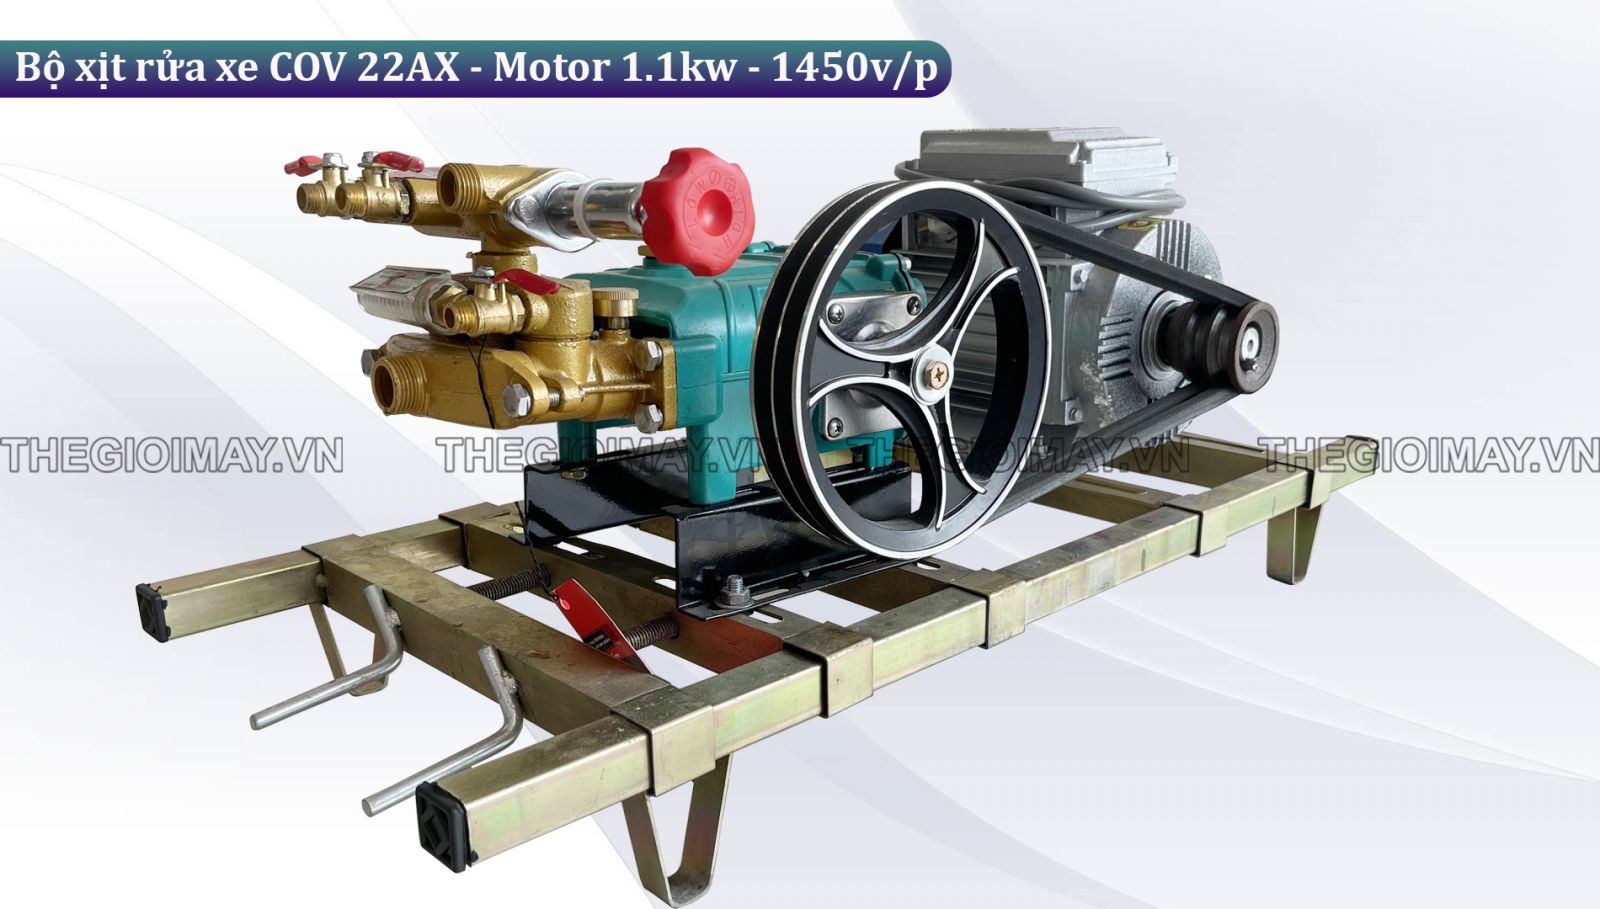 Nguyên lý hoạt động của bộ xịt rửa xe dây đai COV 22AX - Motor 1.1kw-1450v/p